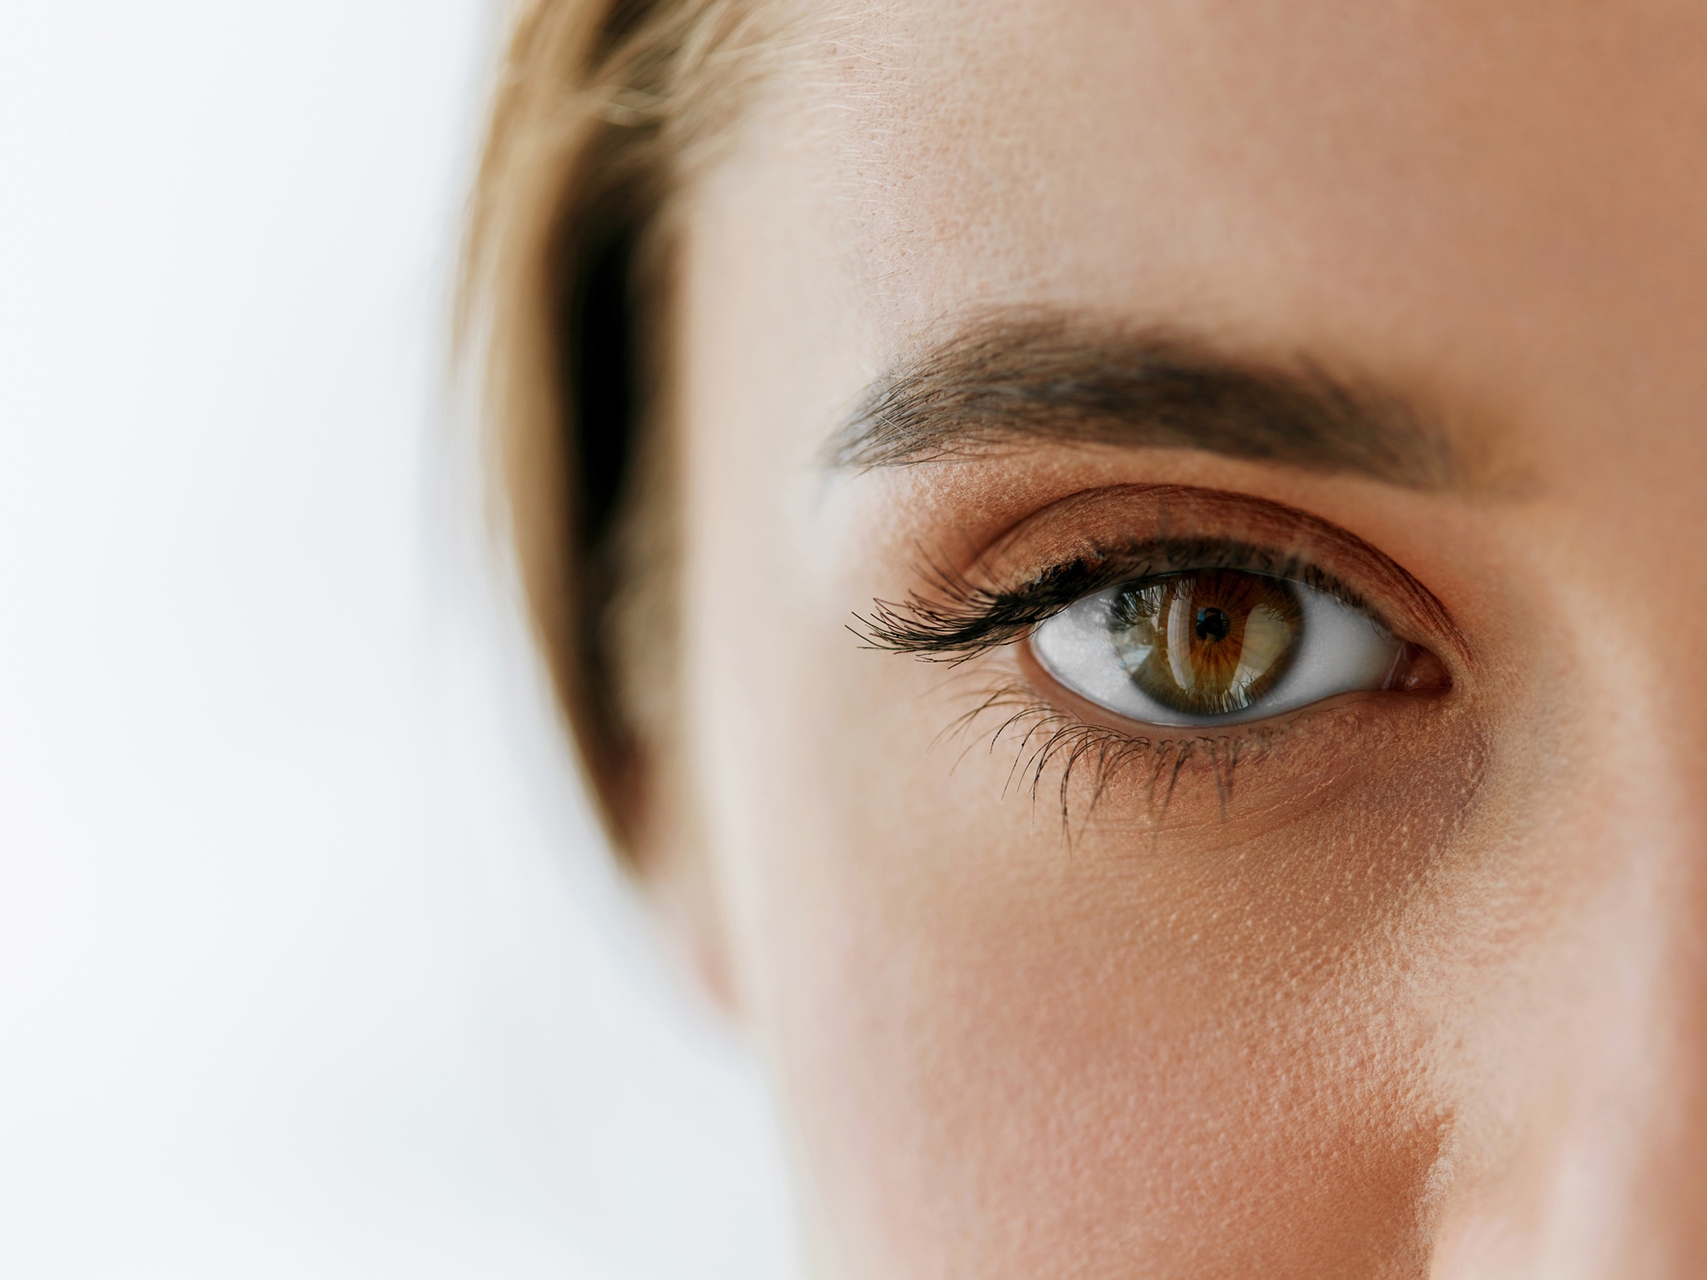 Das Bild zeigt eine Nahaufnahme des Gesichts einer Frau, wobei der Fokus auf dem linken Auge liegt. 